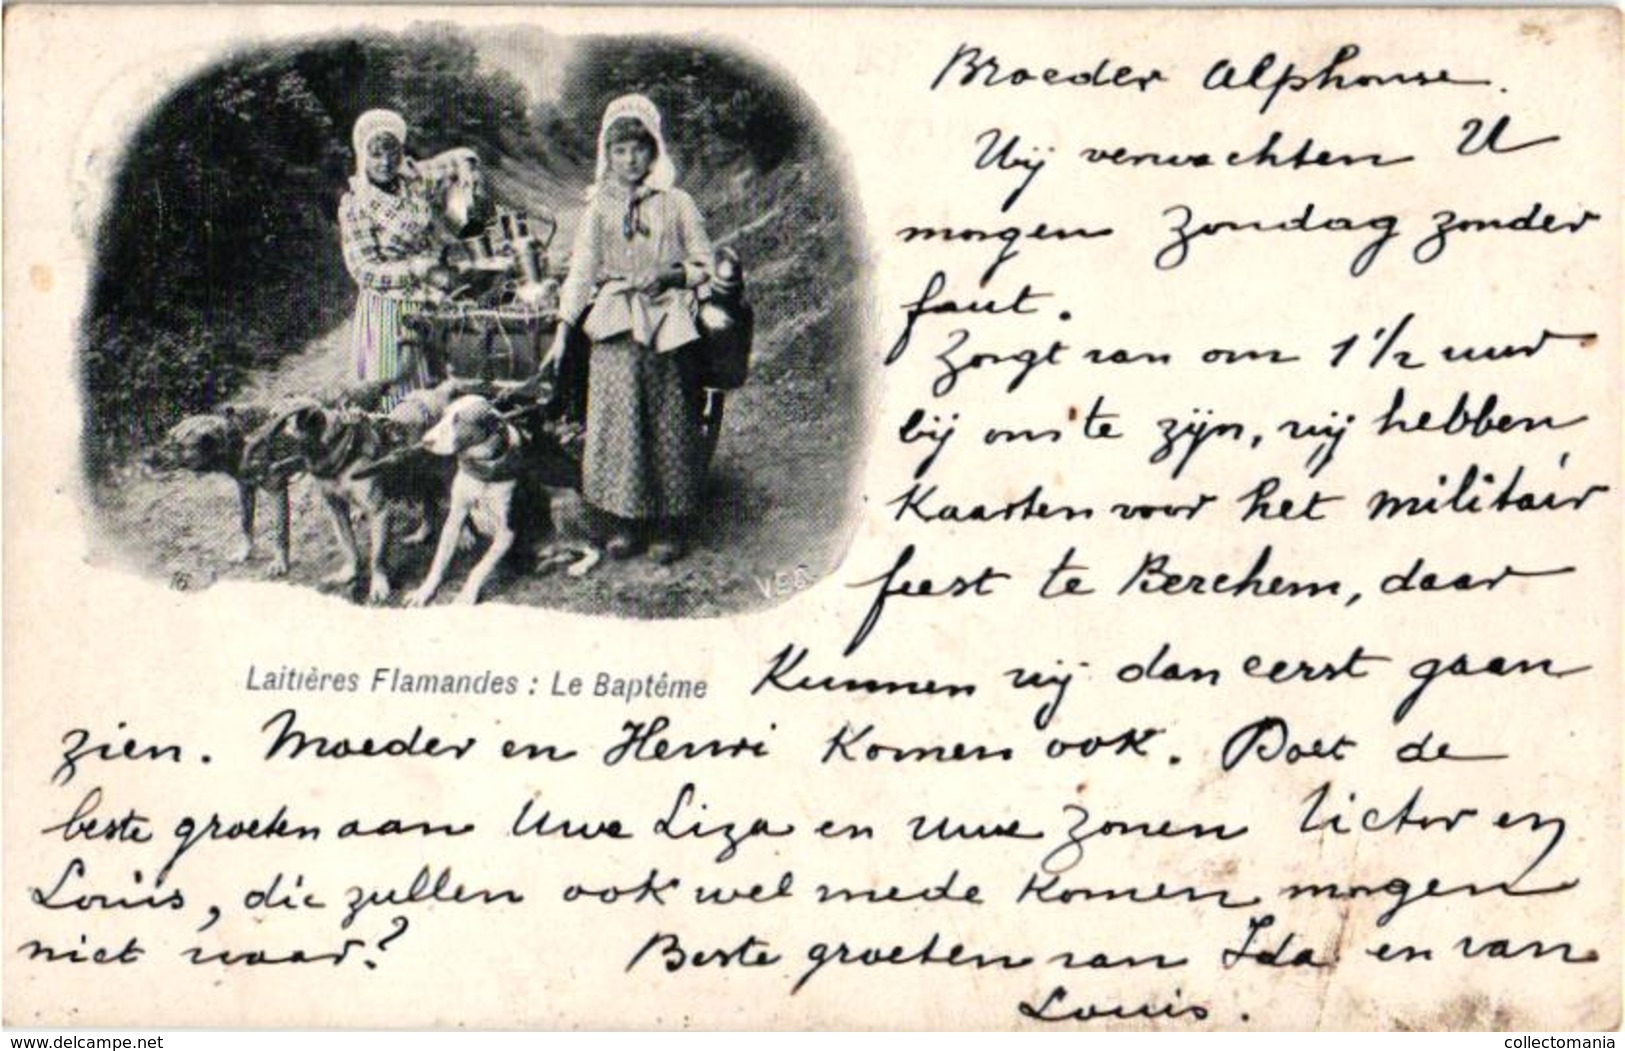 10 CPA  anno 1900 - LATIERES Flamandes - éditeur VEO (dans le cliché) - transport canine hondenkar alletages de chiens